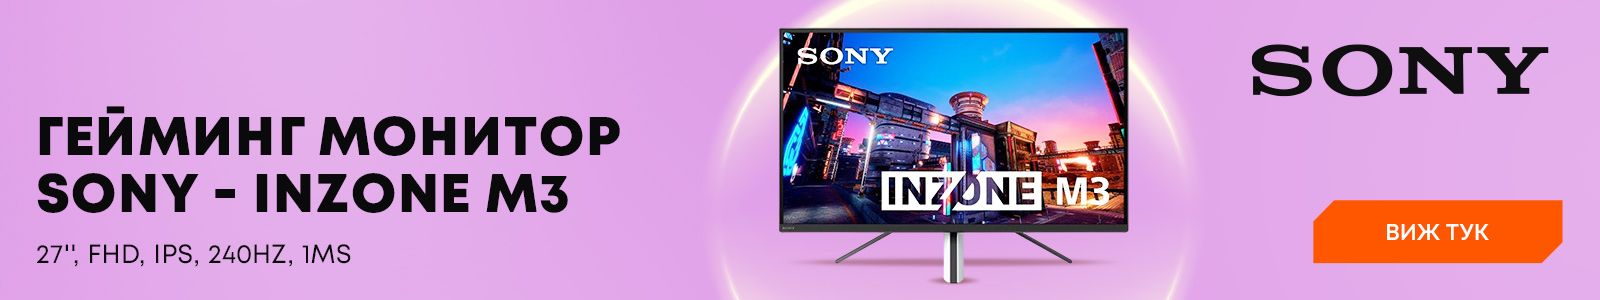 Mонитор Sony - Inzone M3